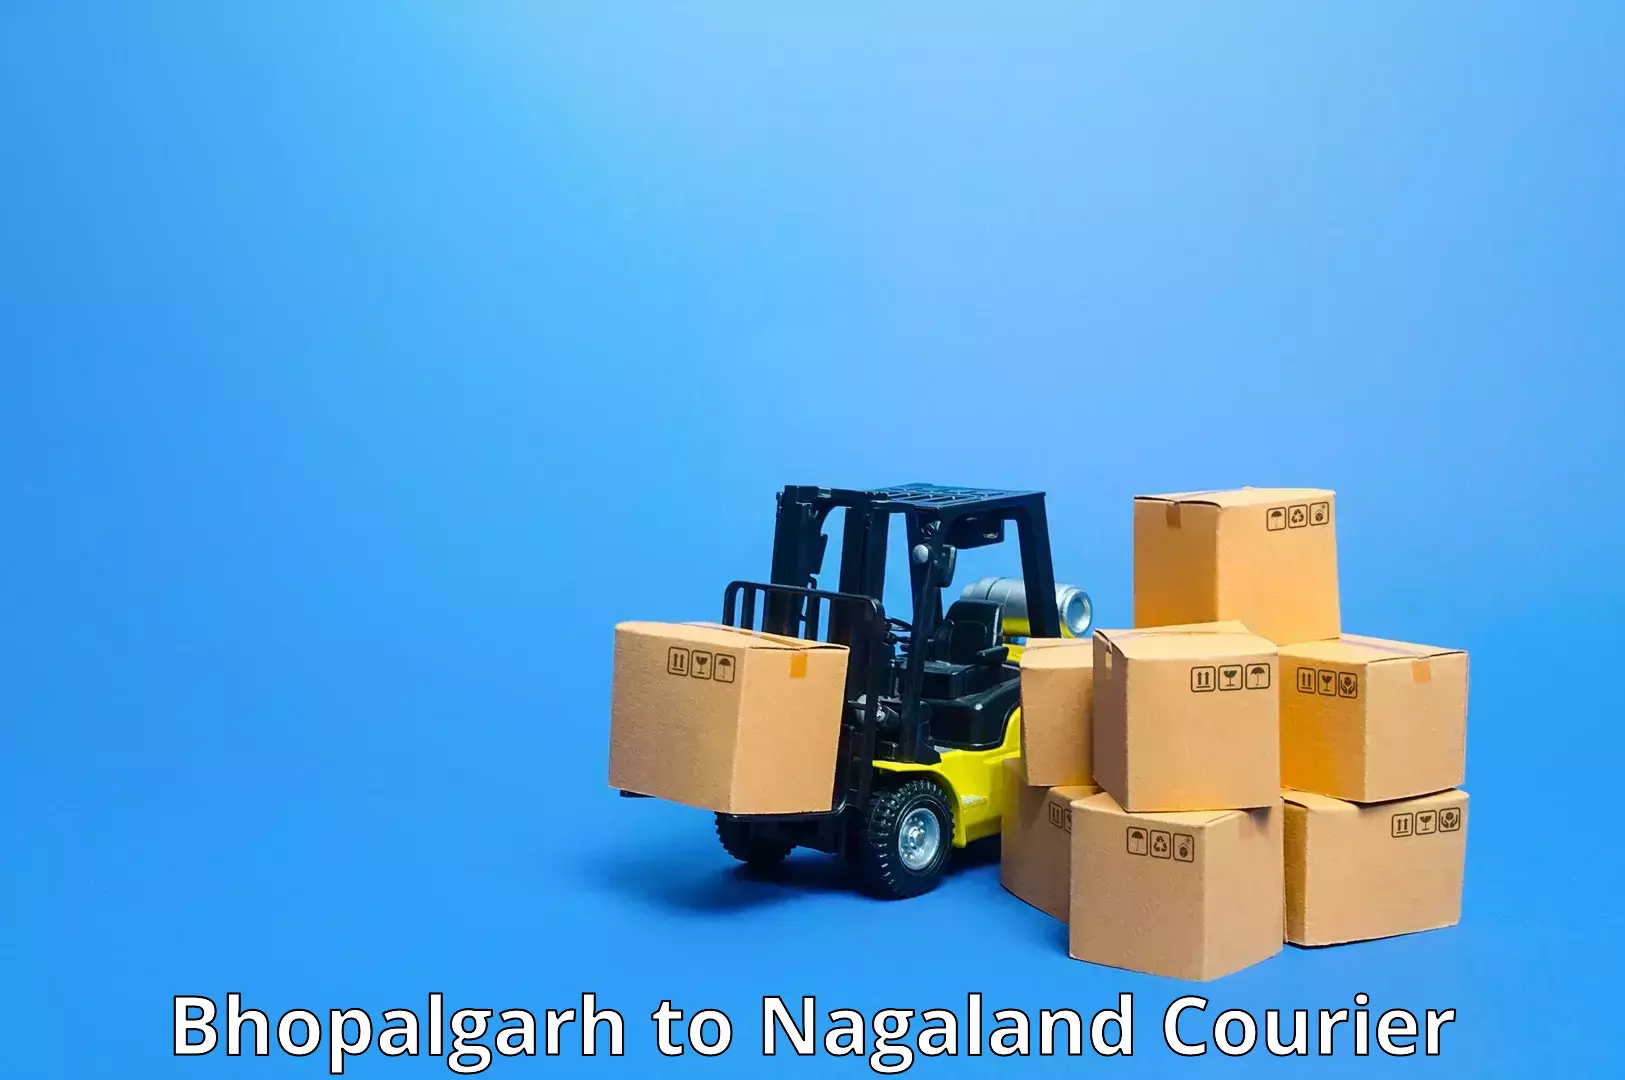 Versatile courier offerings Bhopalgarh to Longleng